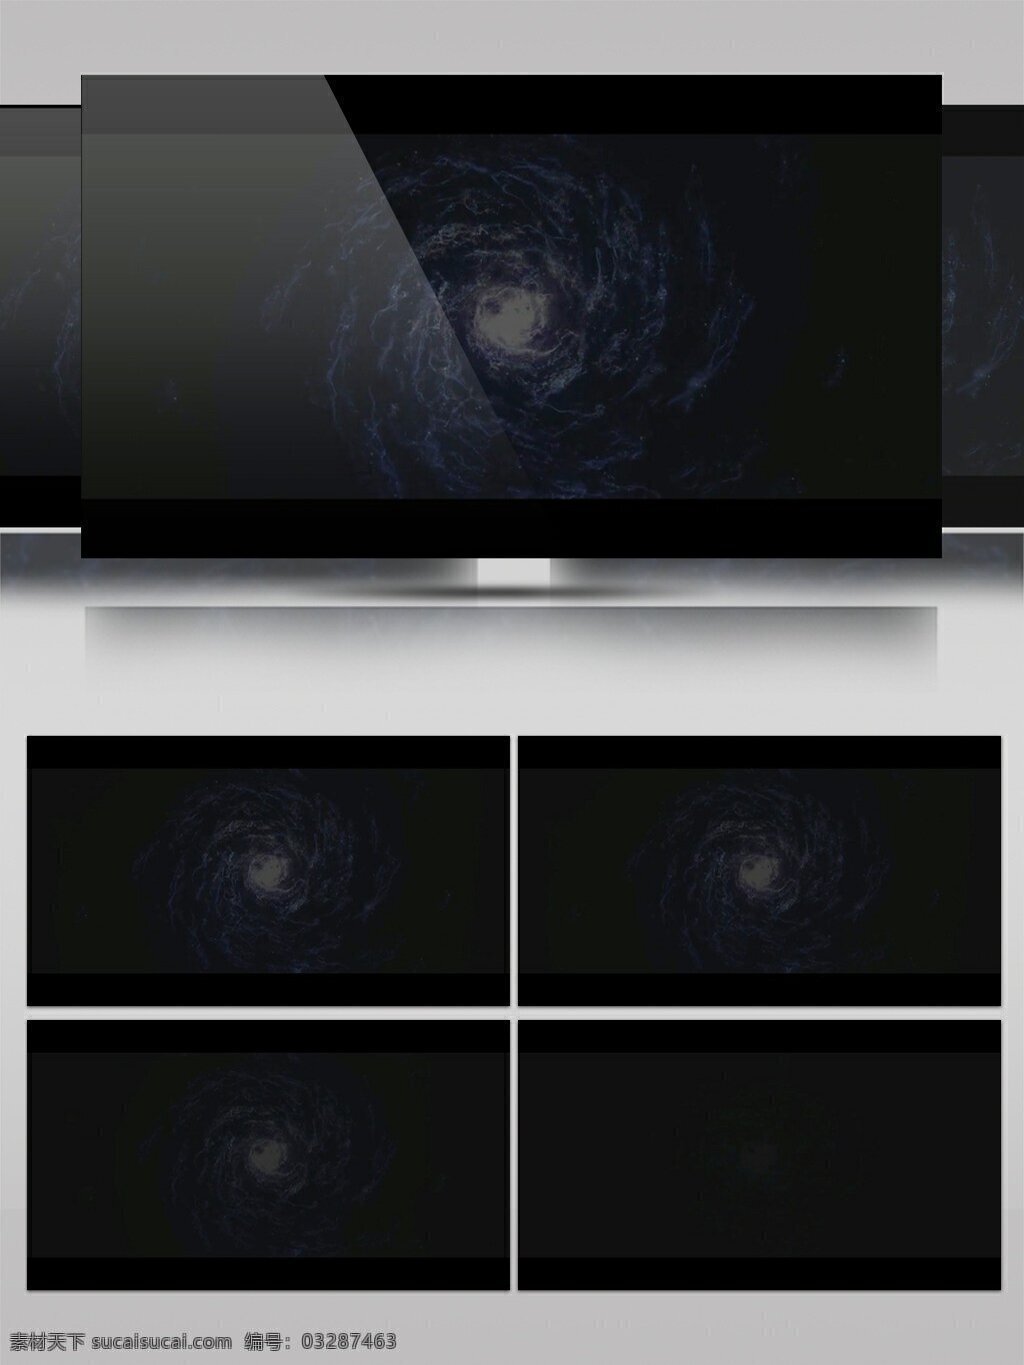 高清 宇宙 星系 唯美 视频 动态视频素材 高清视频素材 视频素材 星河 运行